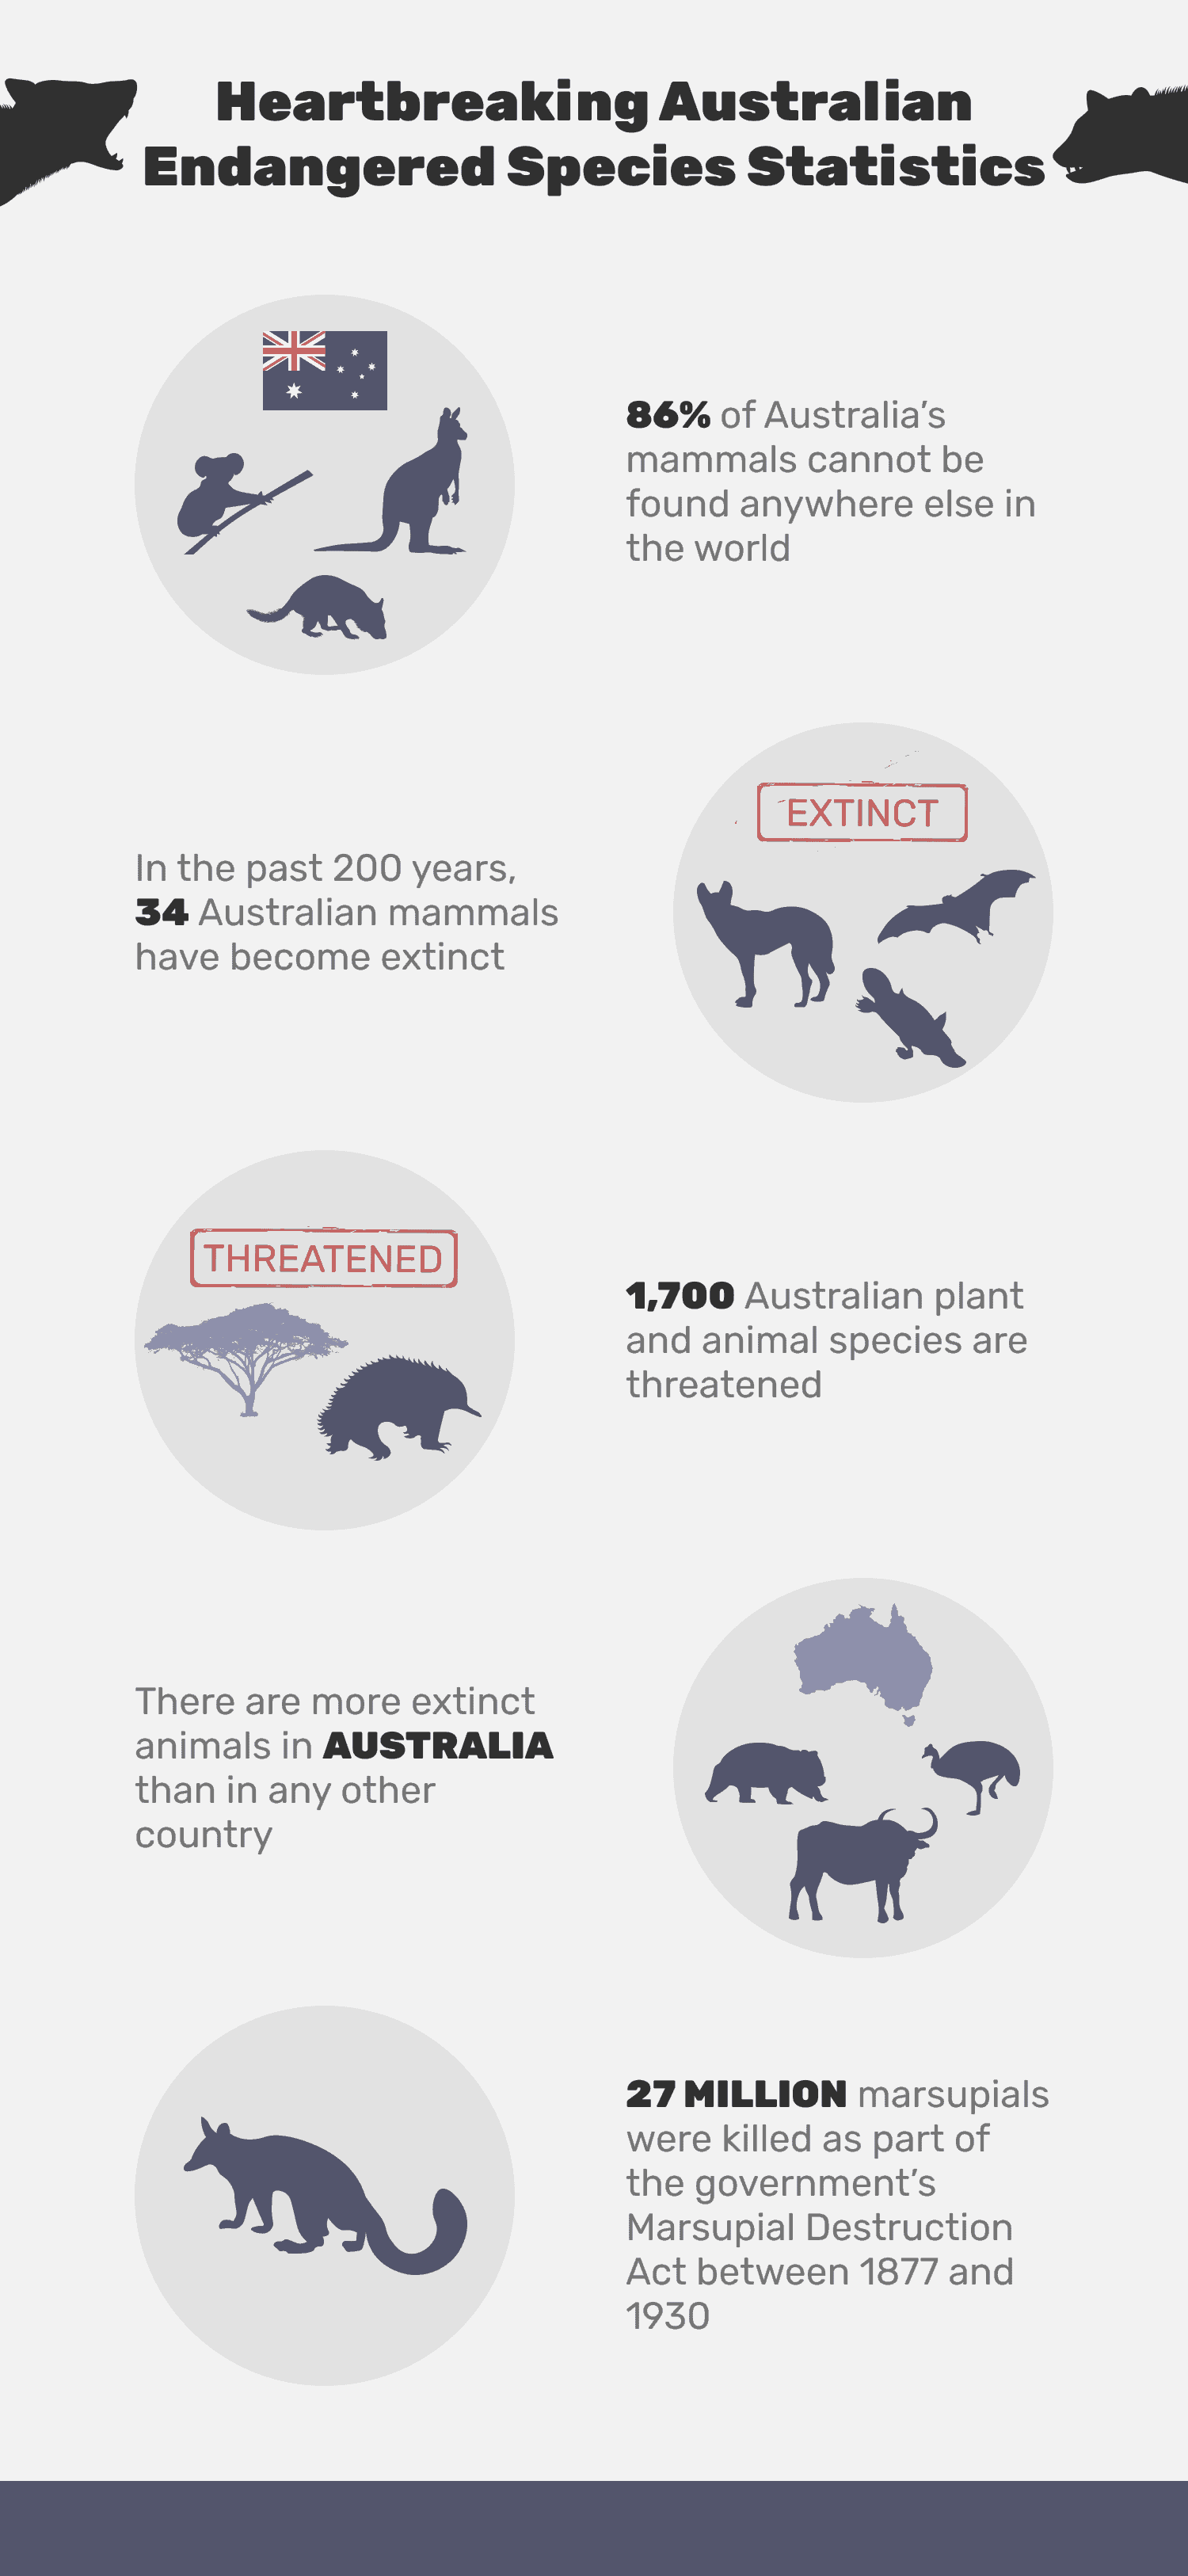 Heartbreaking_Australian_Endangered_Species_Statistics